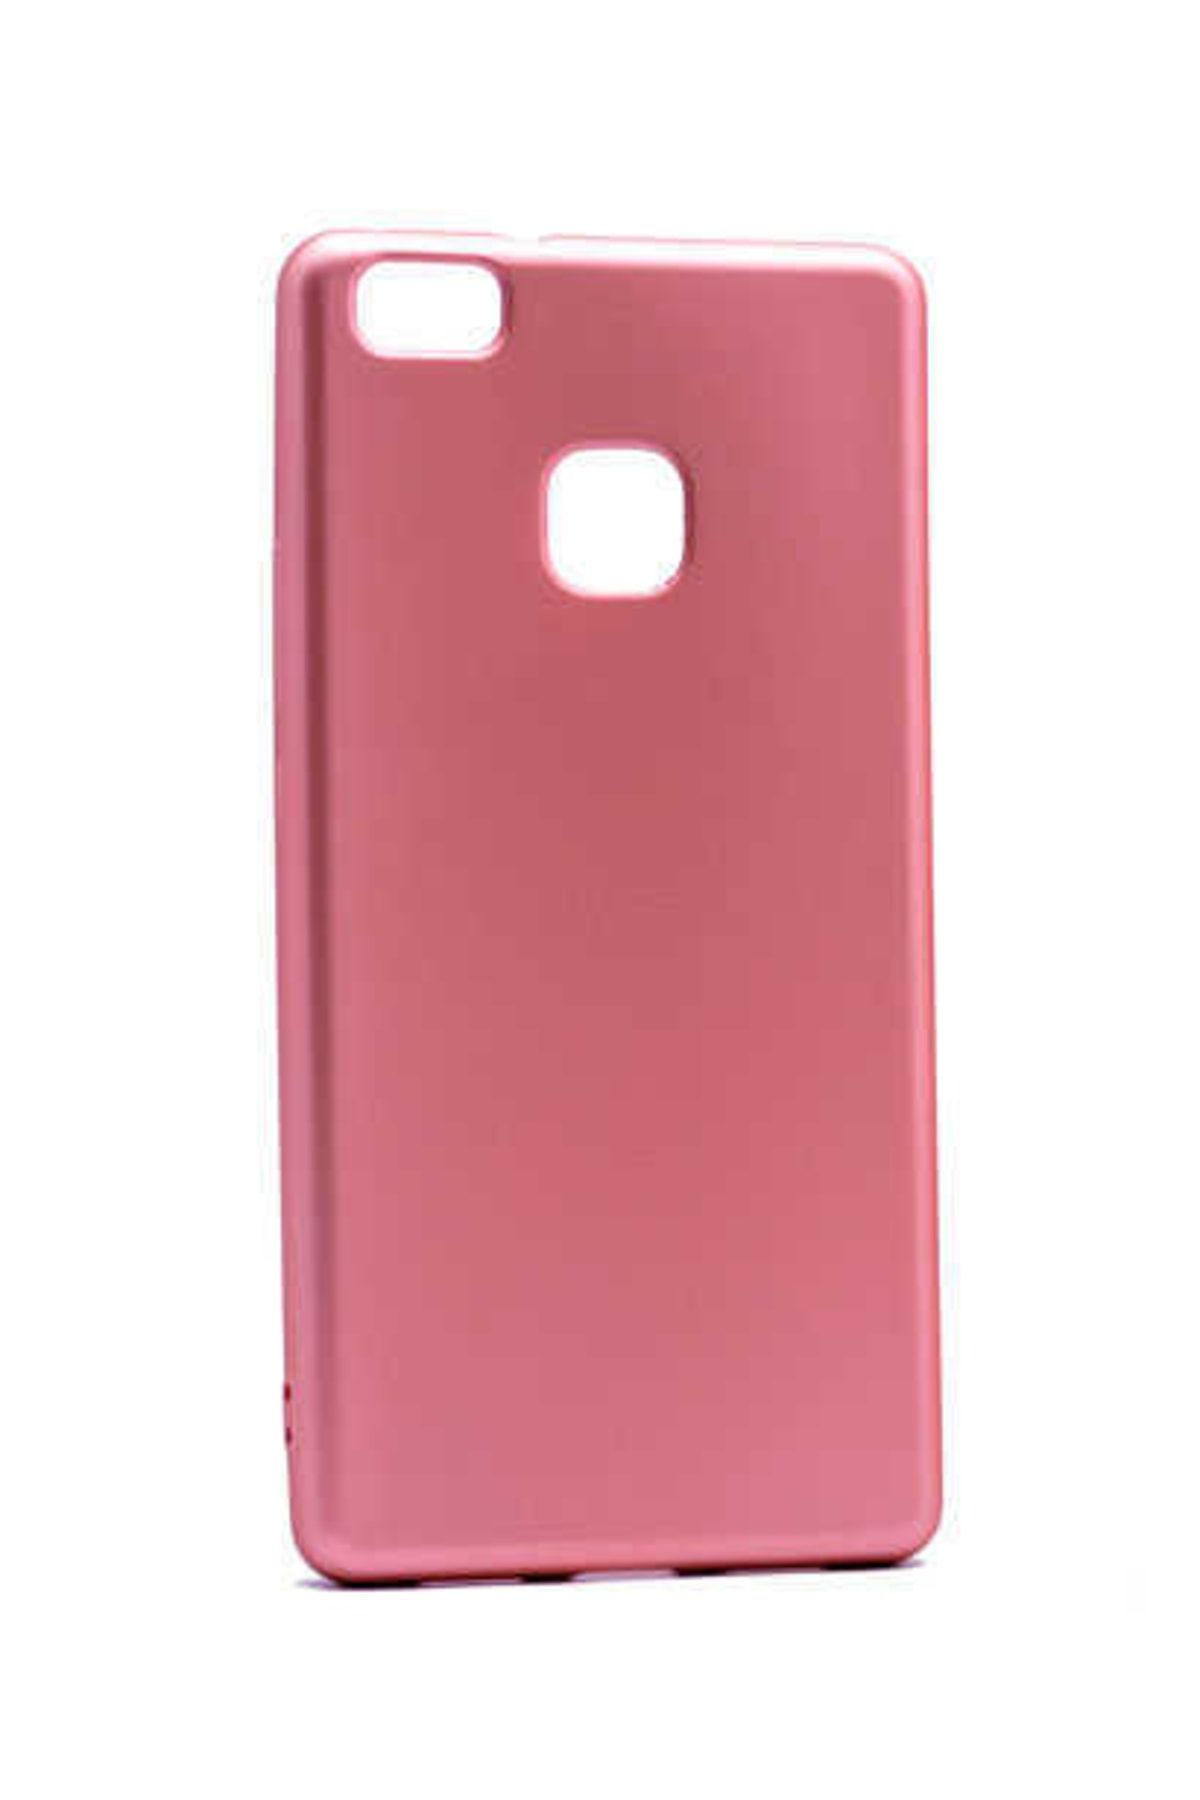 HEPTEKİLETİŞİM Huawei P9 Lite Kılıf Yumuşak Dokulu Soft Esnek Ince Mat Renkli Silikon Kapak (premier)